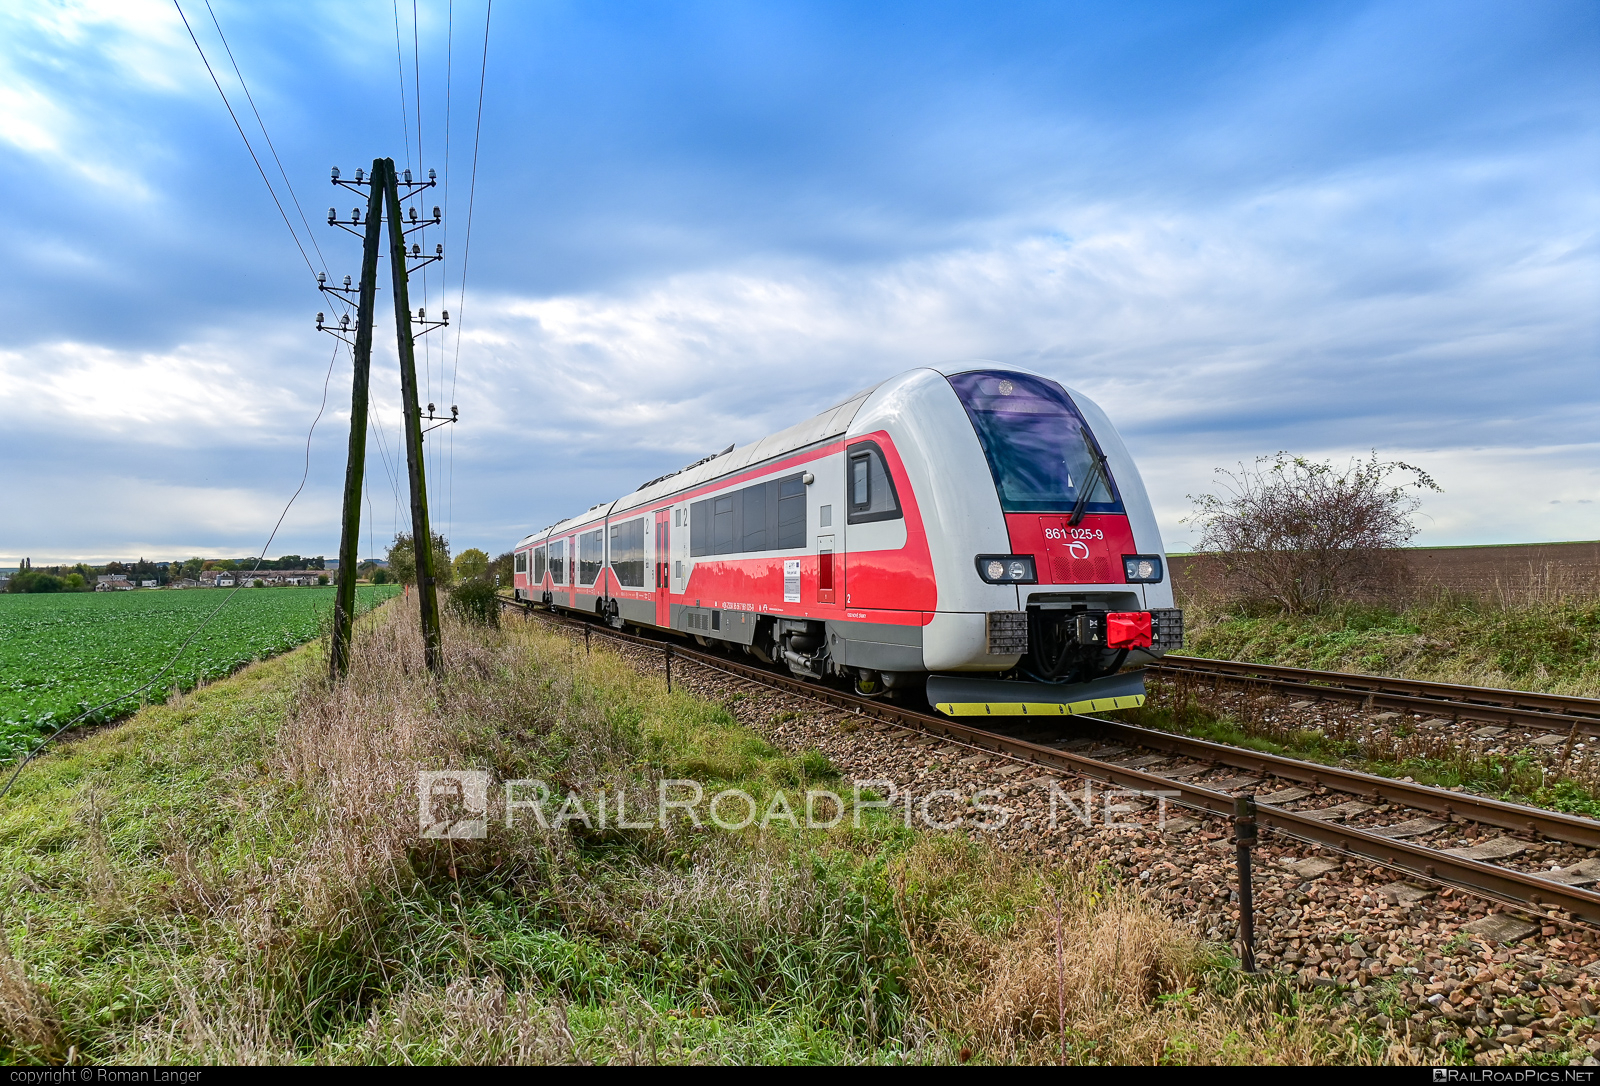 ŽOS Vrútky Class 861.0 - 861 025-9 operated by Železničná Spoločnost' Slovensko, a.s. #ZeleznicnaSpolocnostSlovensko #dunihlav #husenica #zosvrutky #zosvrutky861 #zosvrutky8610 #zssk #zssk861 #zssk8610